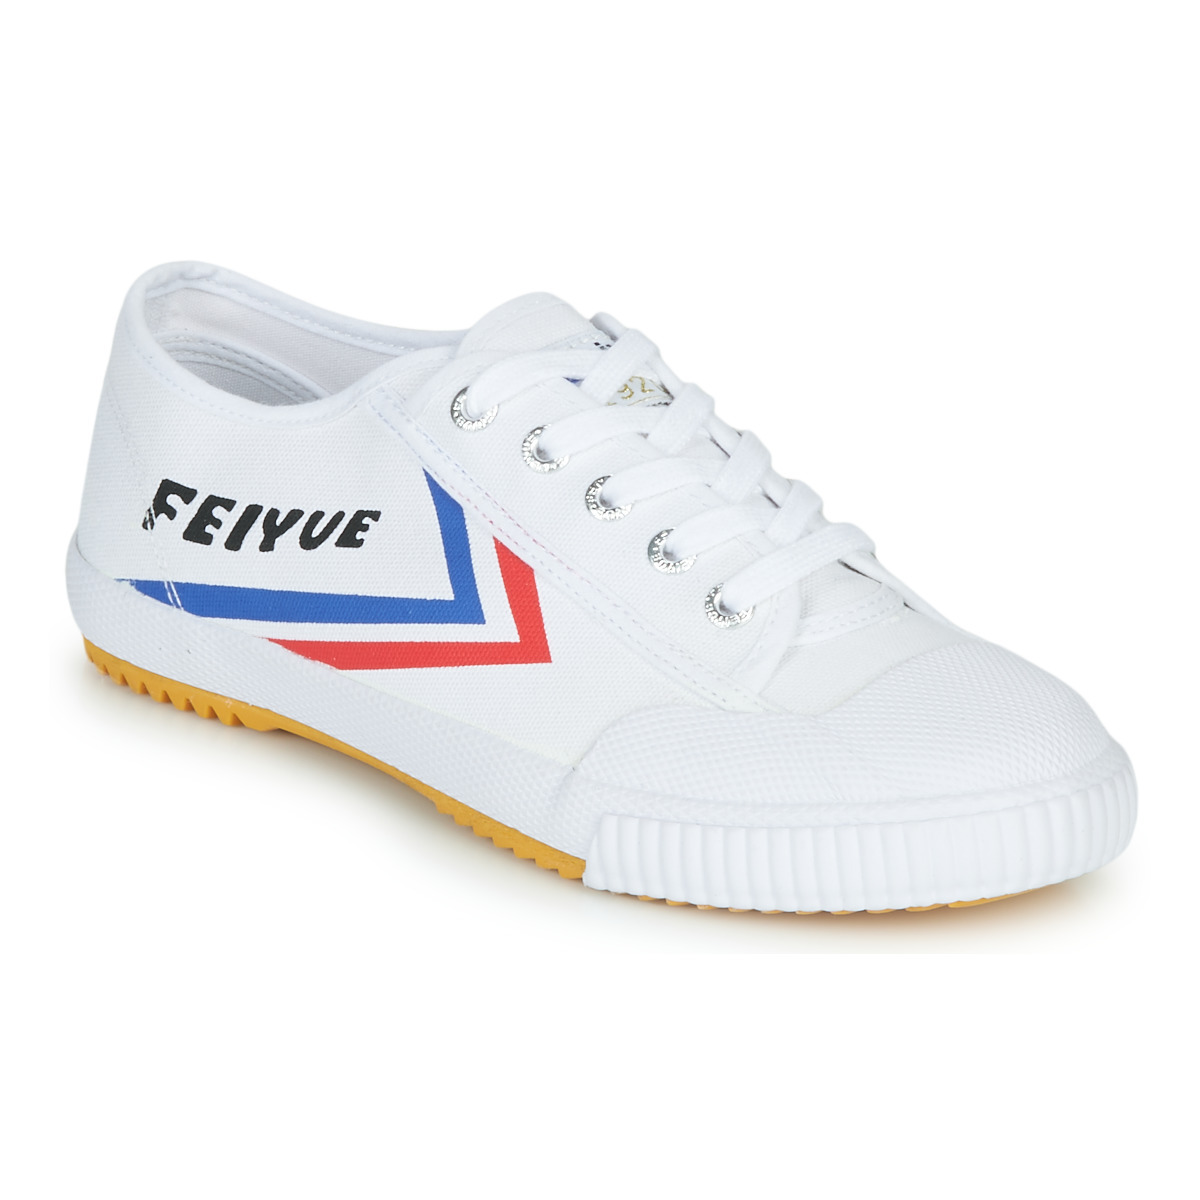 Feiyue - Ladies Sneakers in White - Spartoo GOOFASH